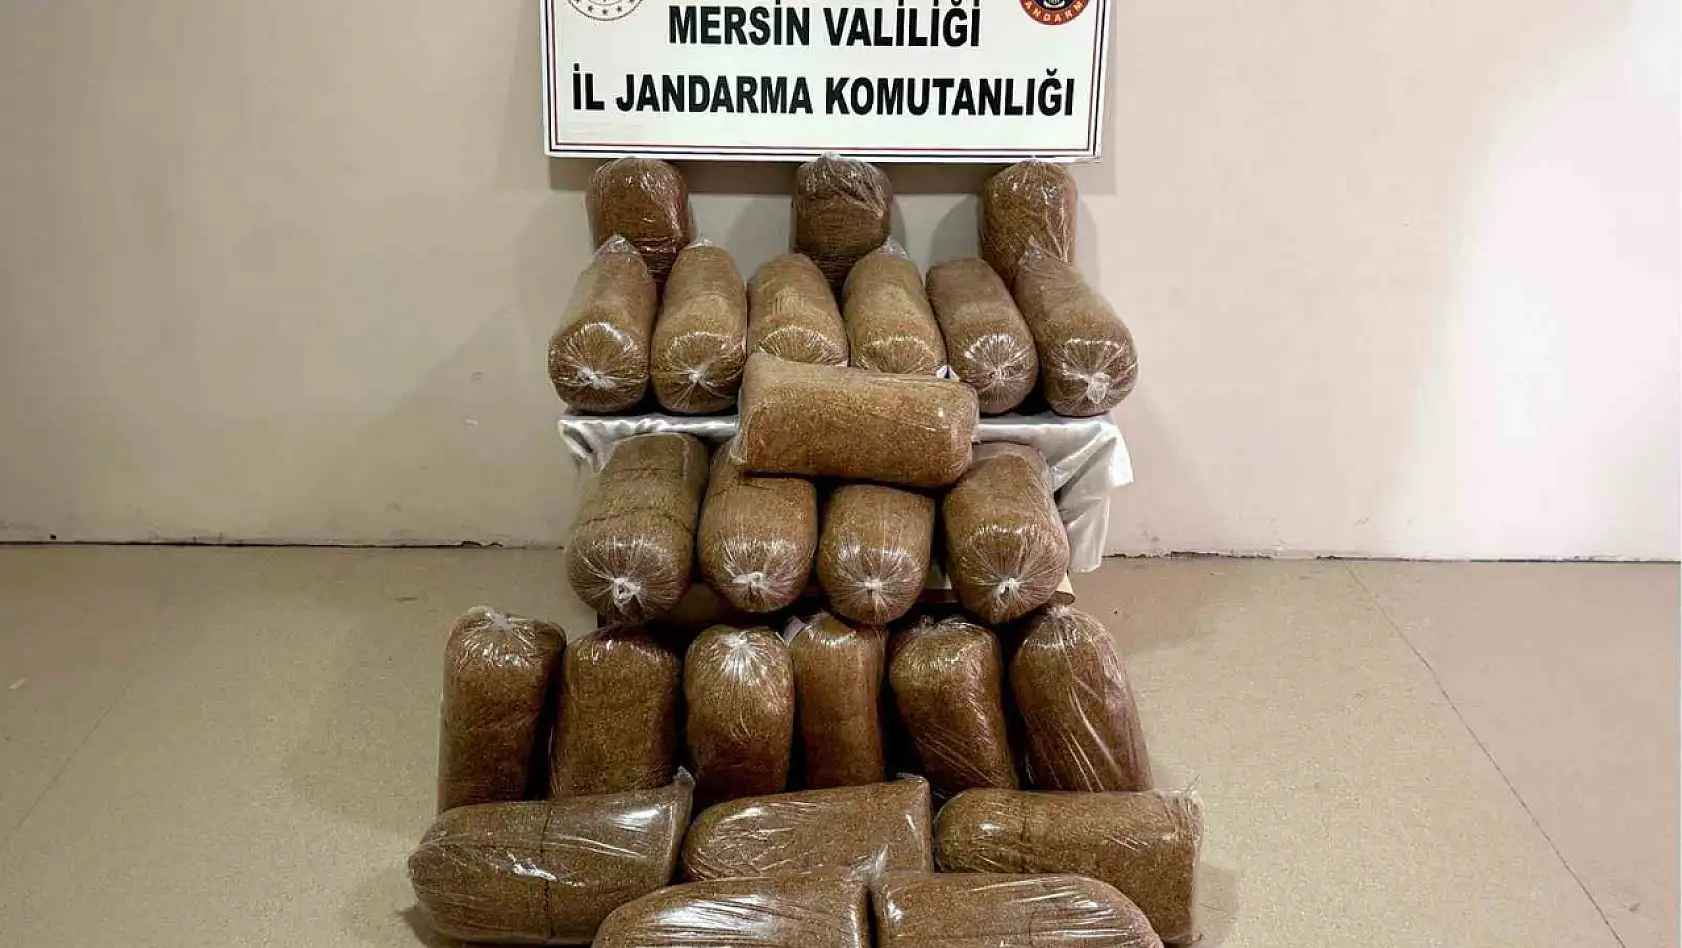 Mersin'de 290 kilo kaçak tütün ele geçirildi